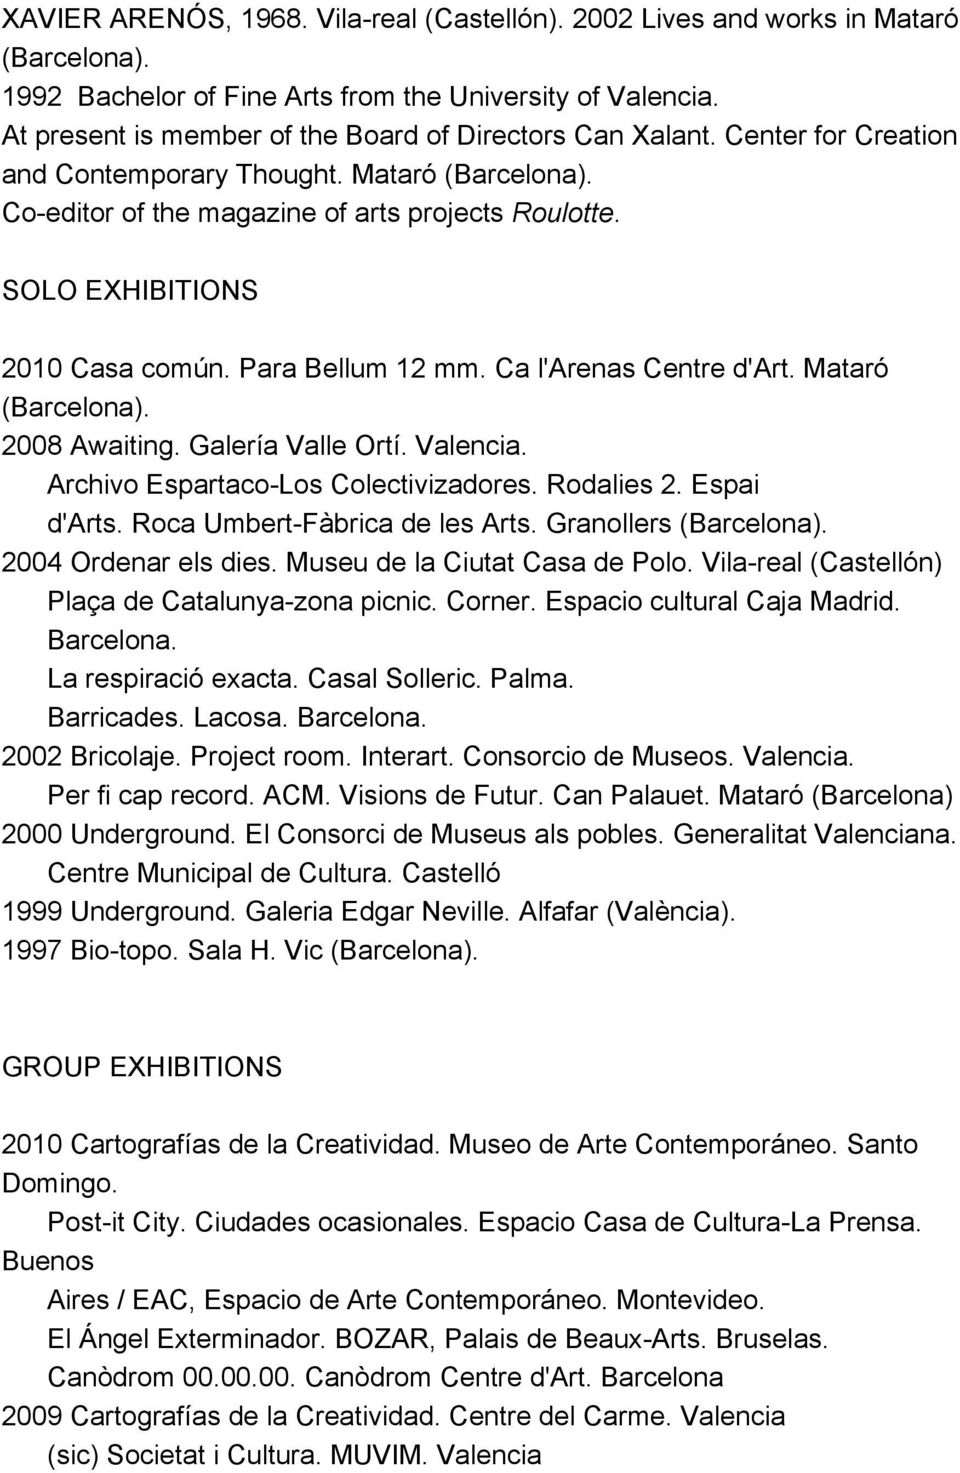 SOLO EXHIBITIONS 2010 Casa común. Para Bellum 12 mm. Ca l'arenas Centre d'art. Mataró (Barcelona). 2008 Awaiting. Galería Valle Ortí. Valencia. Archivo Espartaco-Los Colectivizadores. Rodalies 2.